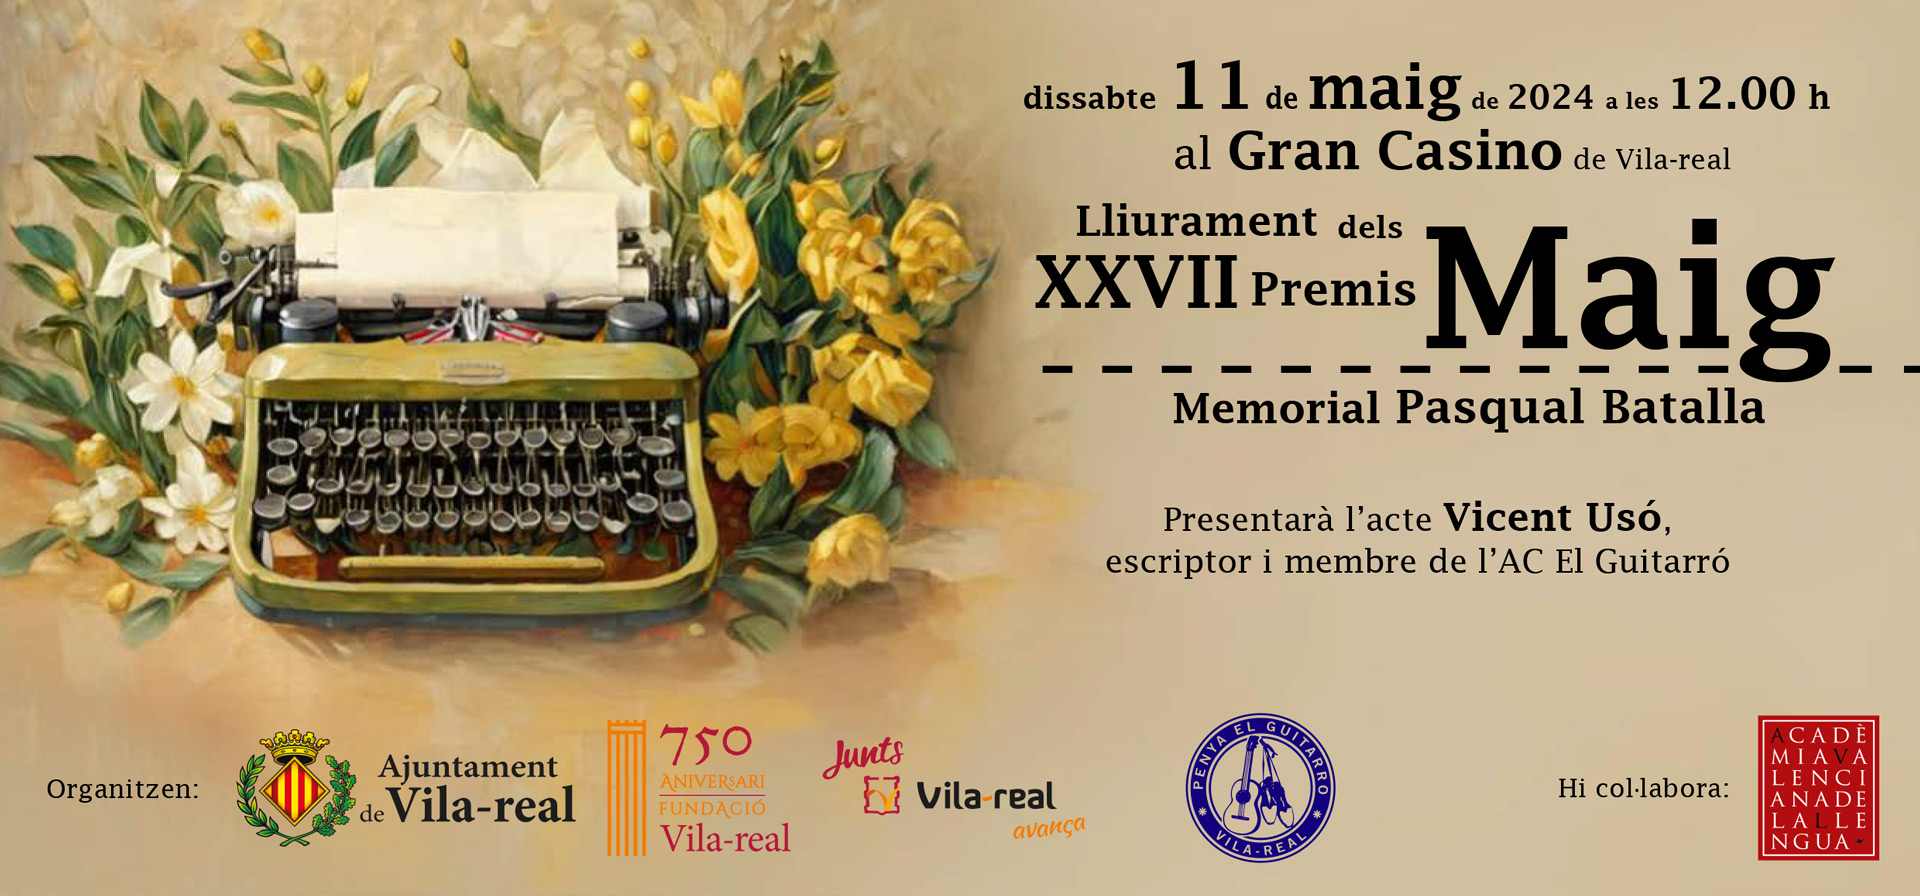 Dissabte, 11 de maig, a les 12.00 h, el Gran Casino de Vila-real acollirà l’acte de lliurament dels Premis Maig – Memorial Pasqual Batalla